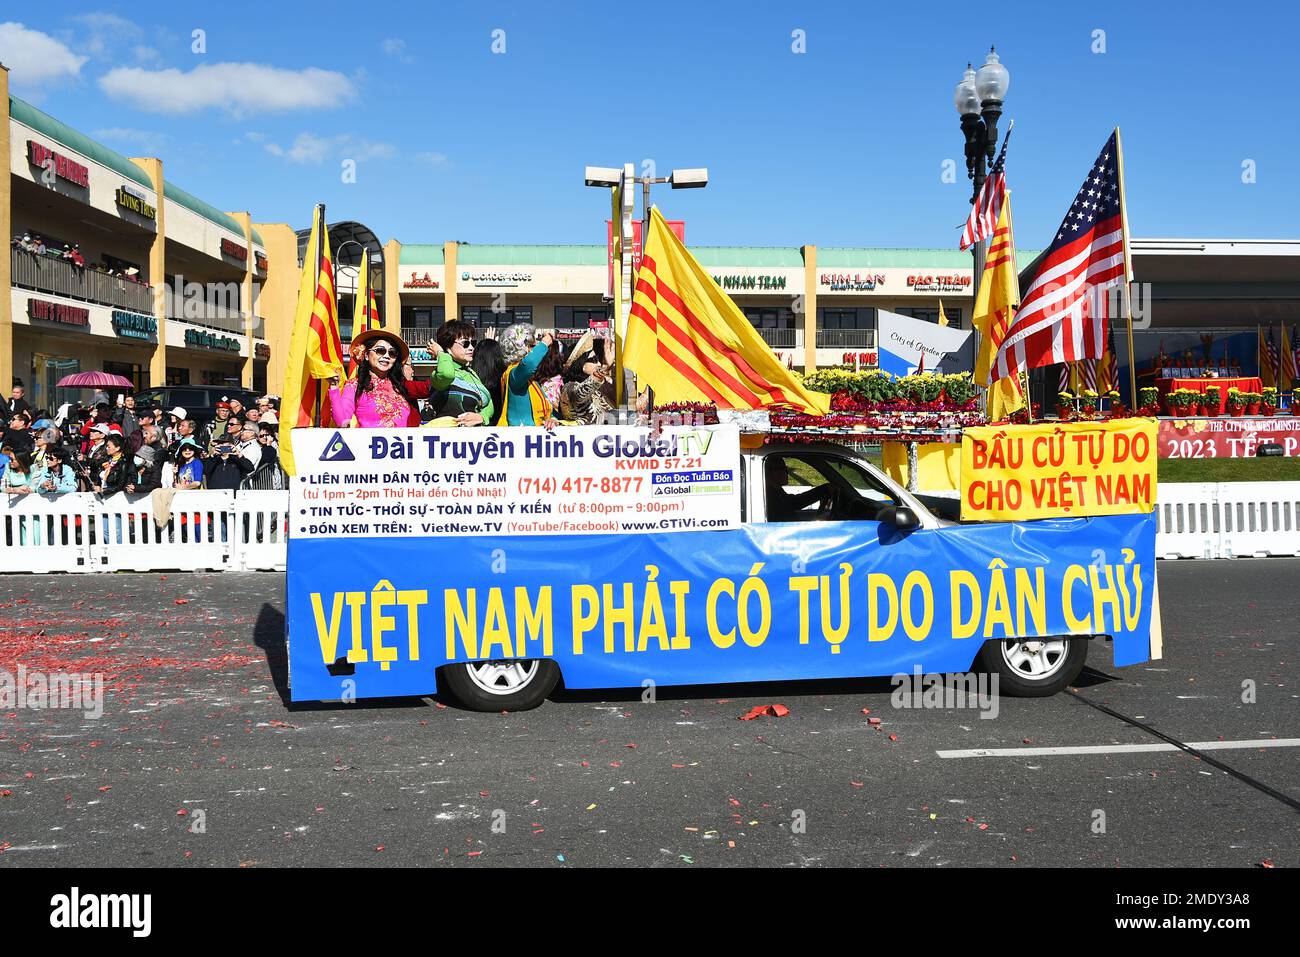 WESTMINSTER, KALIFORNIEN - 22. JANUAR 2023: Freie Wahlen für Vietnam-Banner auf Fahrzeug bei der Tet Parade anlässlich des Jahres der Cat. Stockfoto